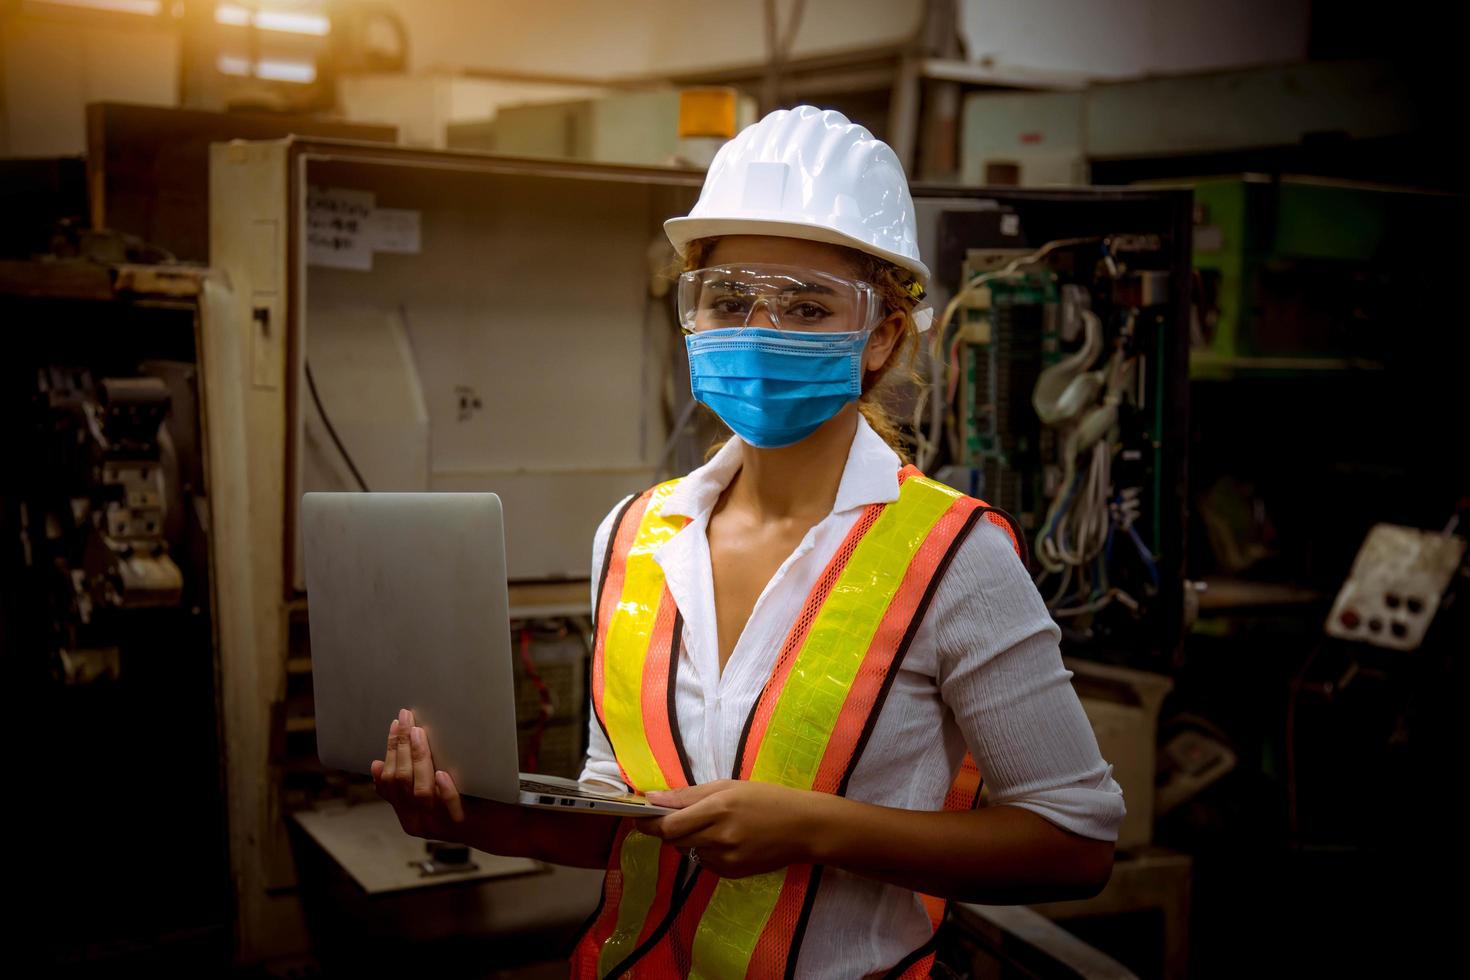 ingenieur onder inspectie en controle van het productieproces op fabrieksstation met schroevendraaier door een veiligheidsmasker te dragen ter bescherming tegen vervuiling en virussen in de fabriek. foto